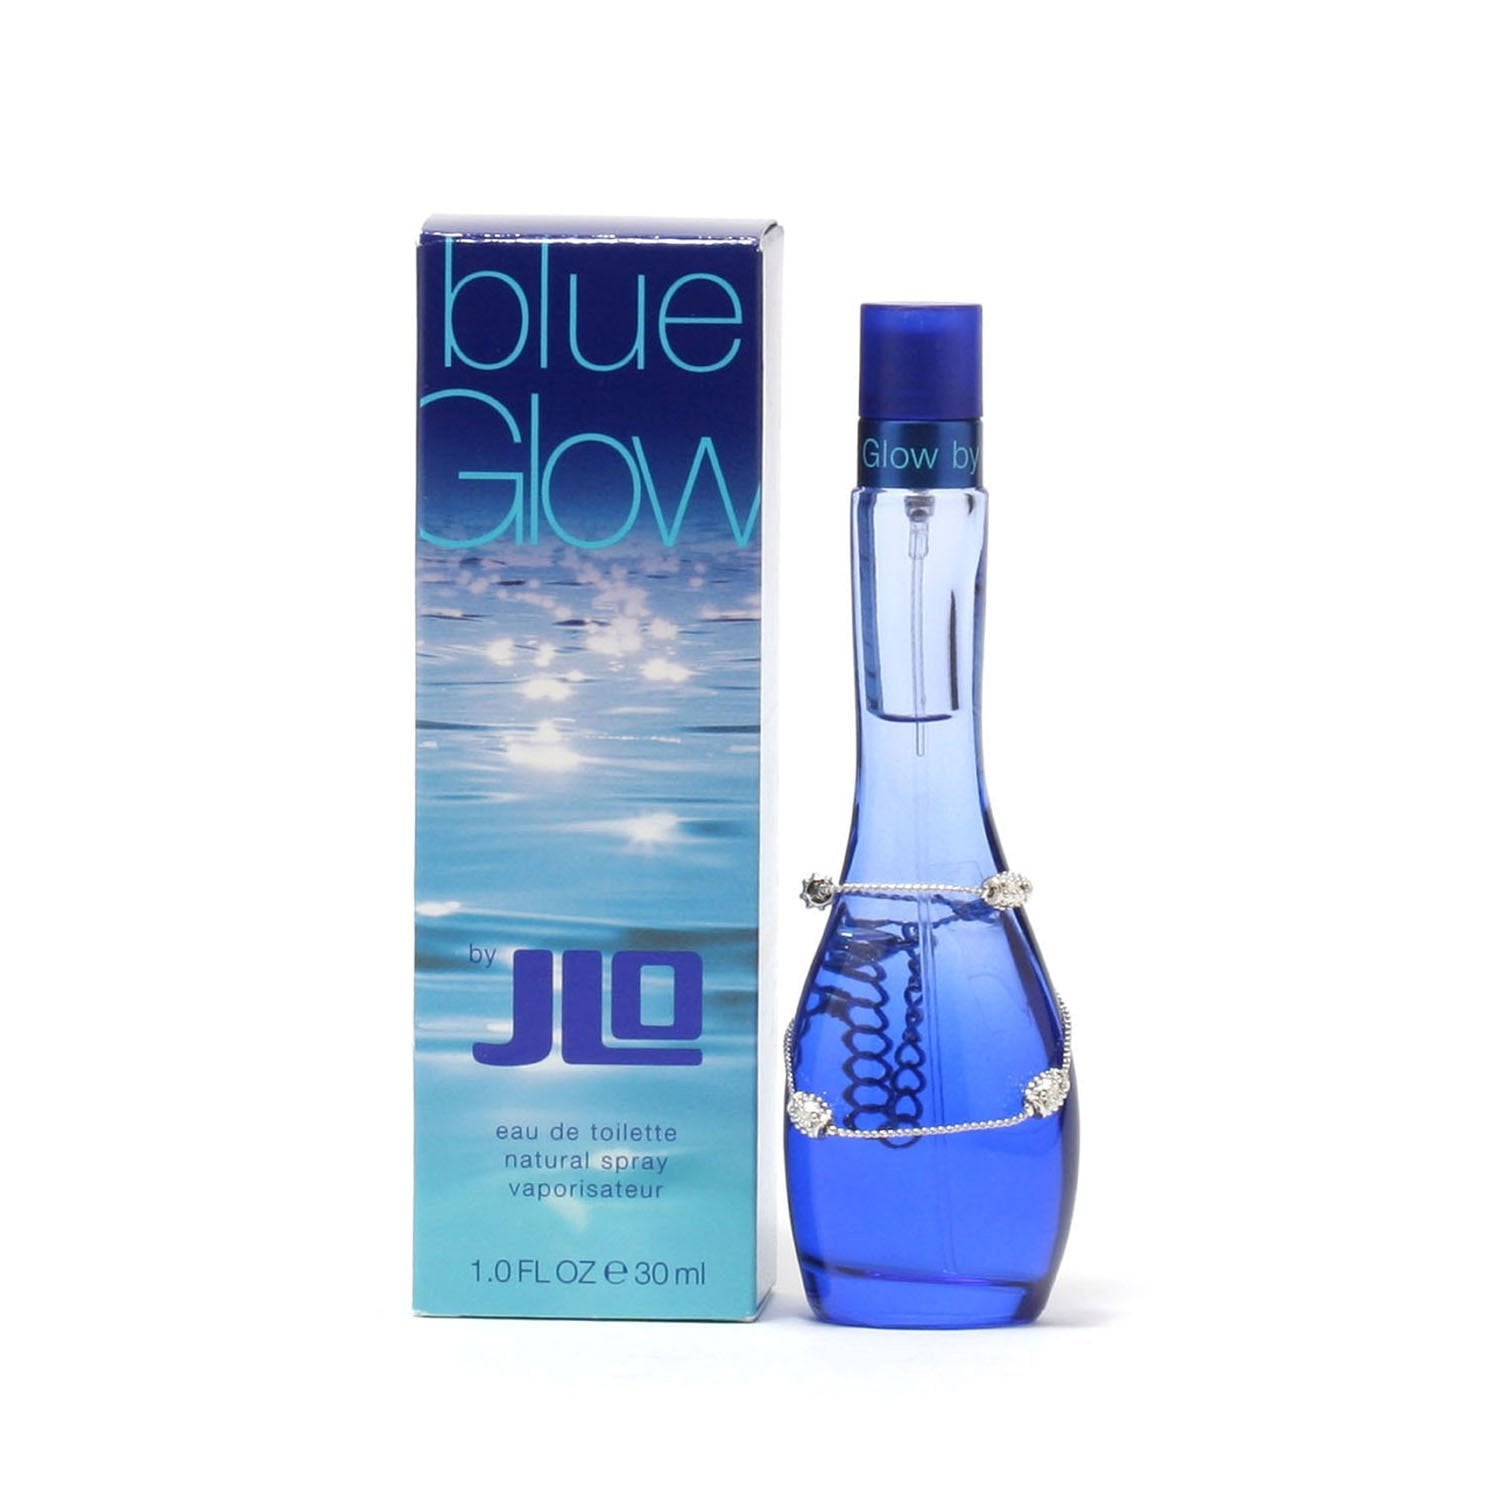 BLUE GLOW FOR WOMEN BY J.LO - EAU DE TOILETTE SPRAY